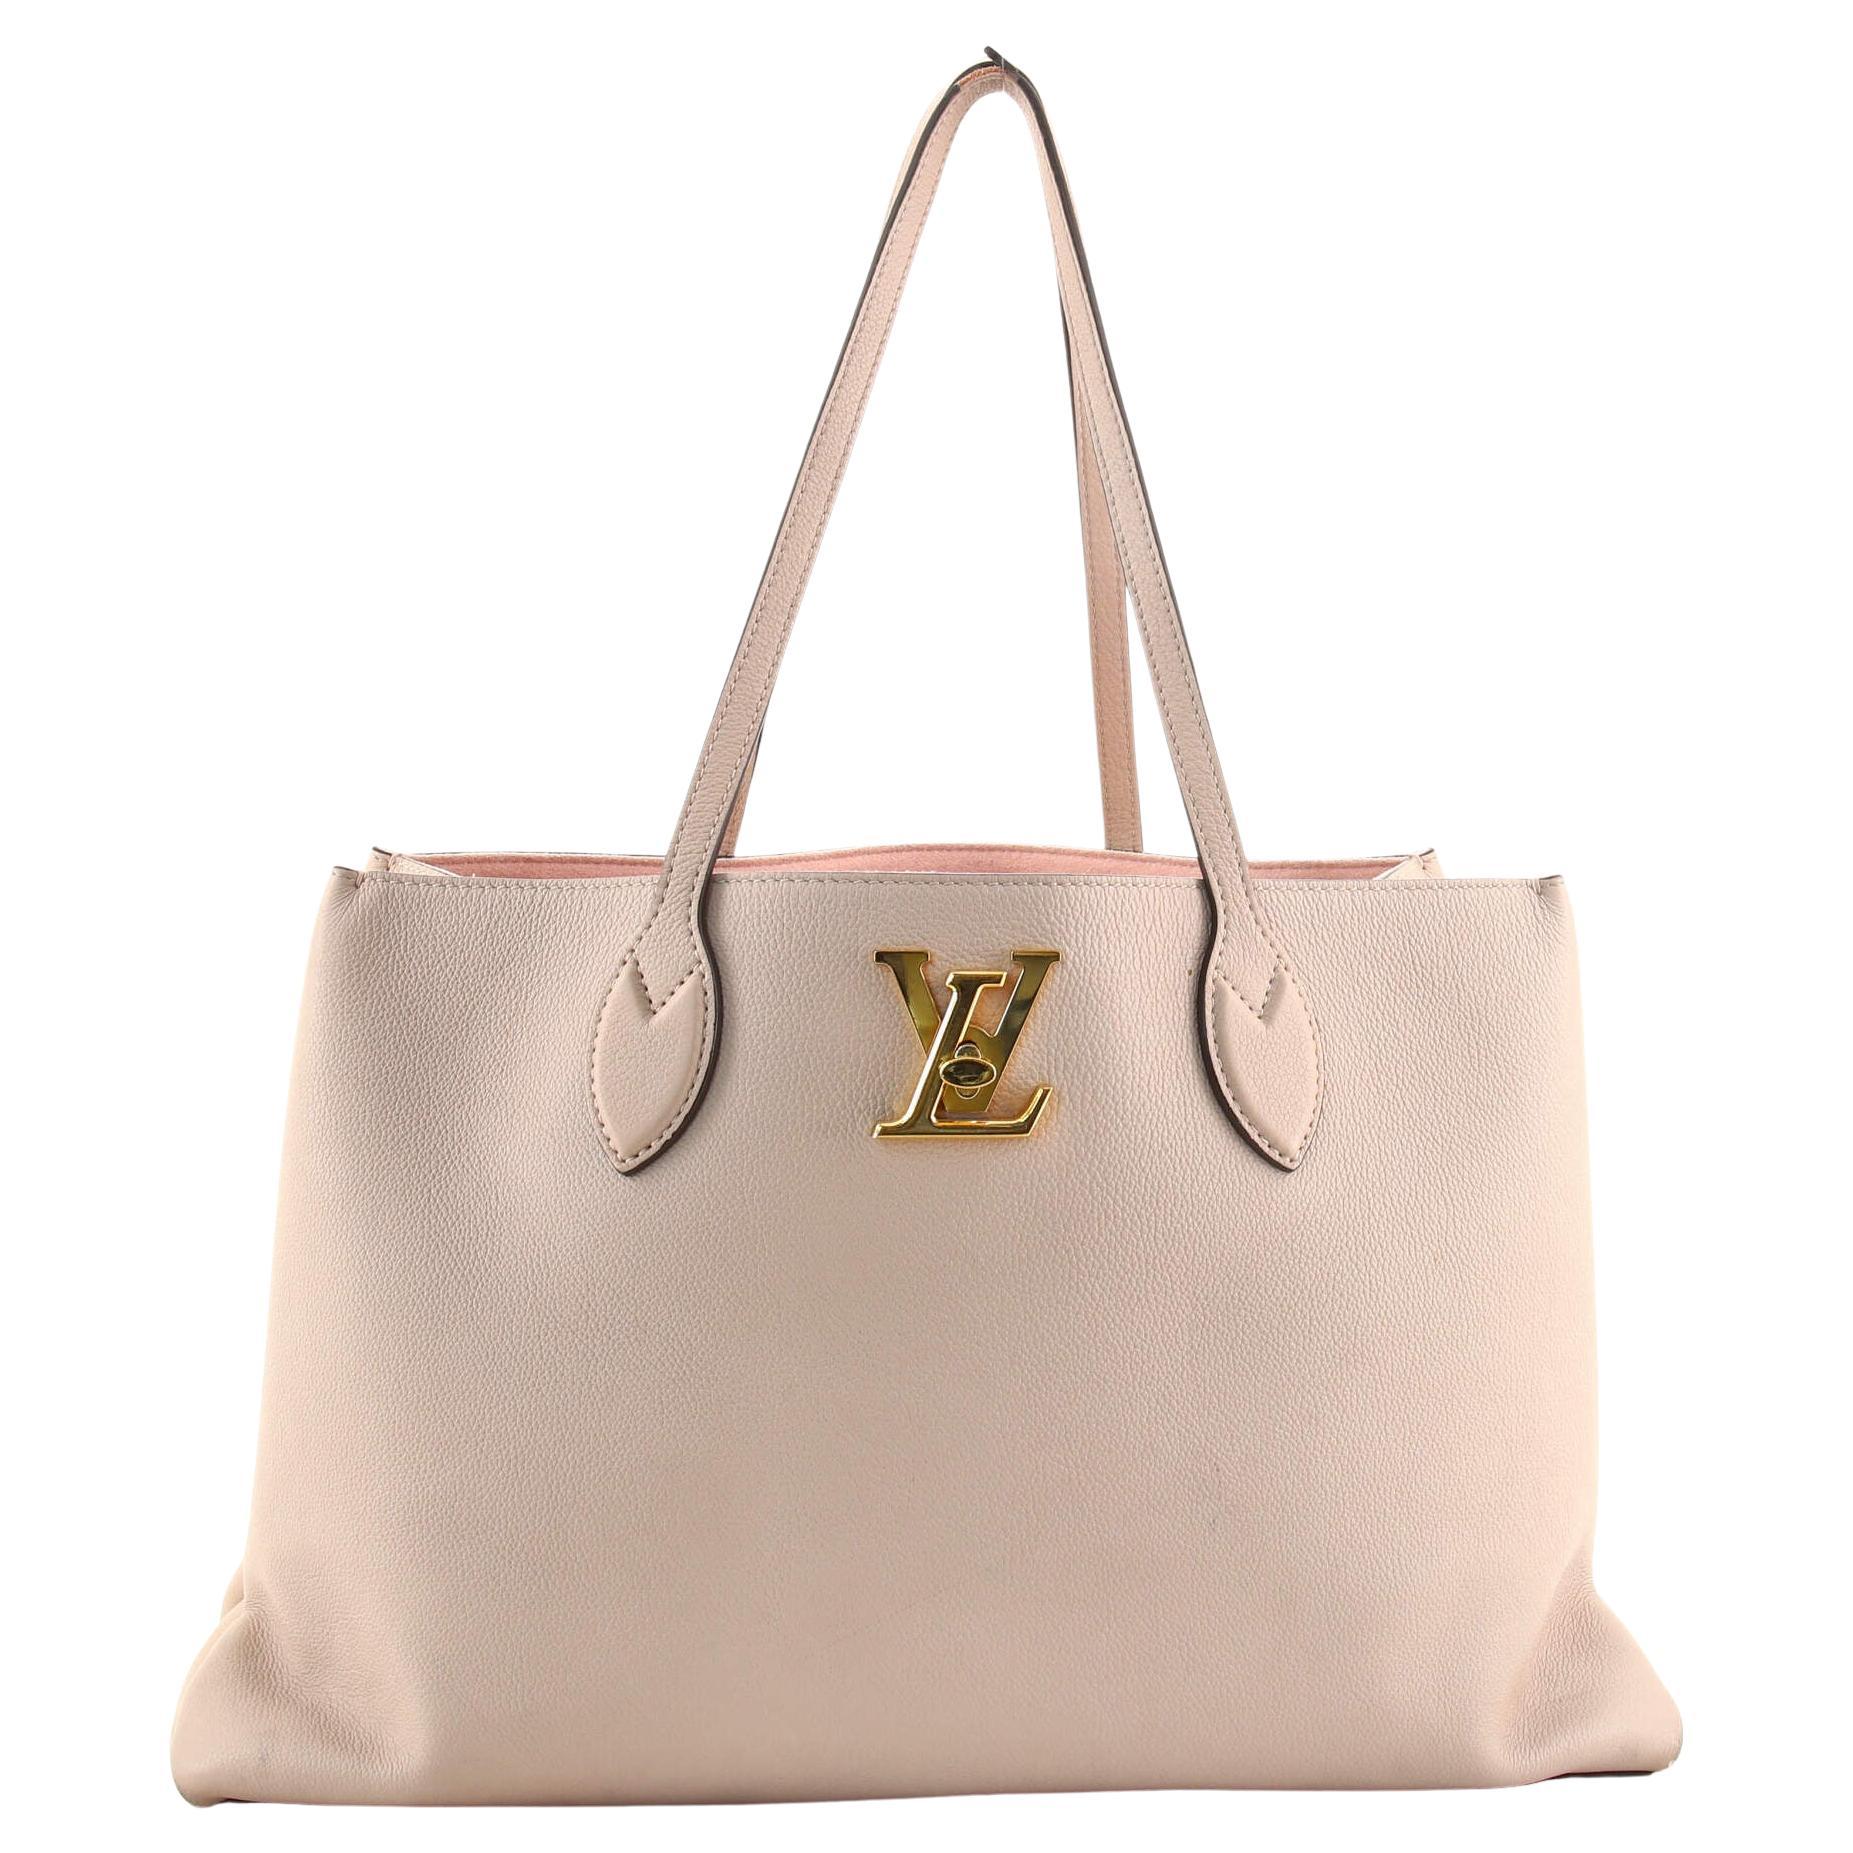 Louis Vuitton 2005 pre-owned Flat Shopper Tote Bag - Farfetch